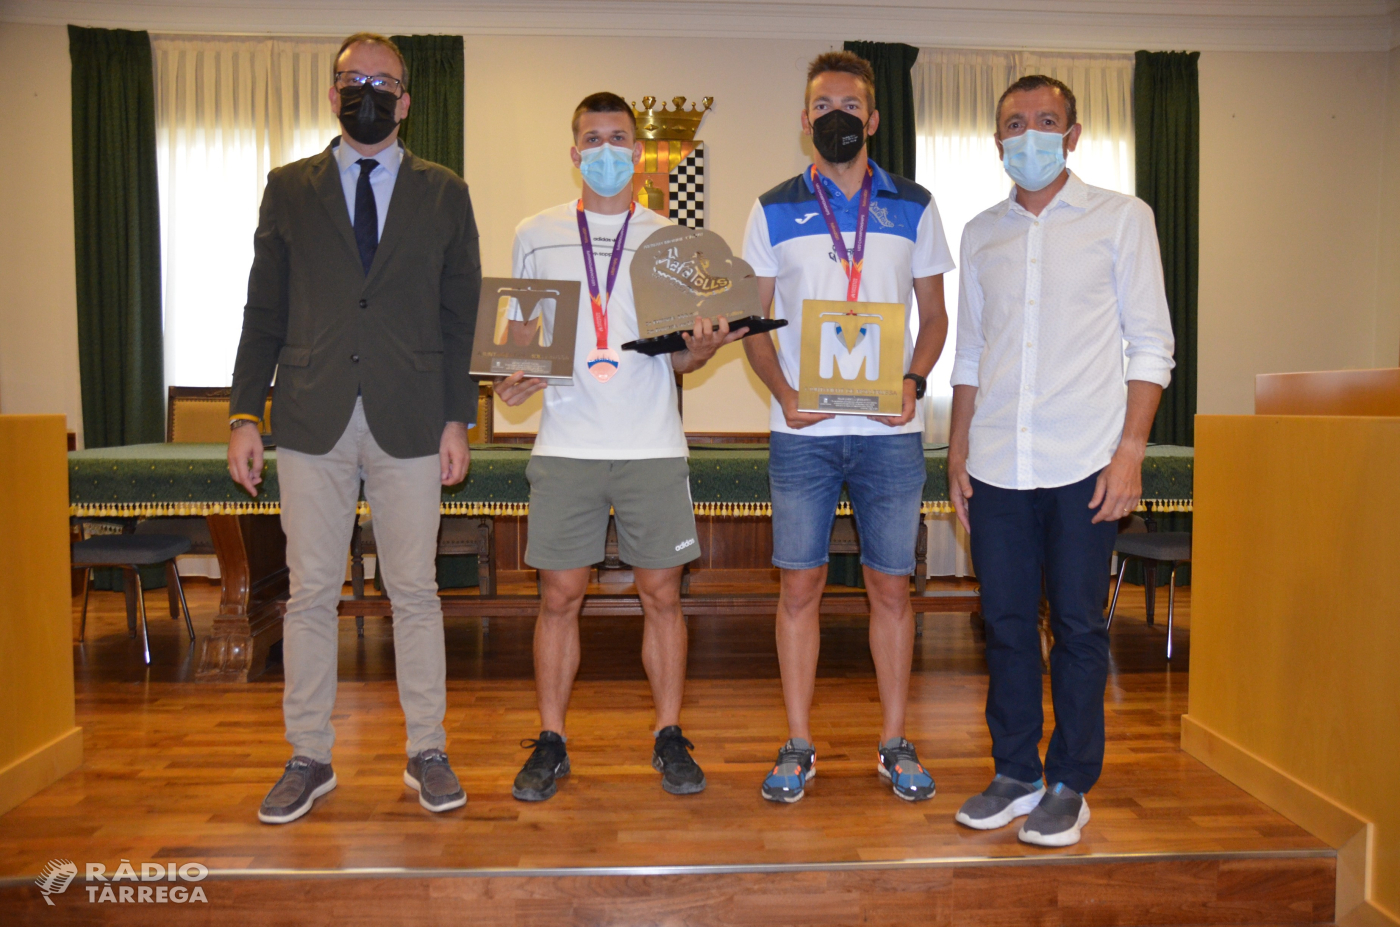 L’Ajuntament de Mollerussa homenatja l’Arnau Monné, atleta targarí format als Xafatolls, per l’èxit als campionats europeus